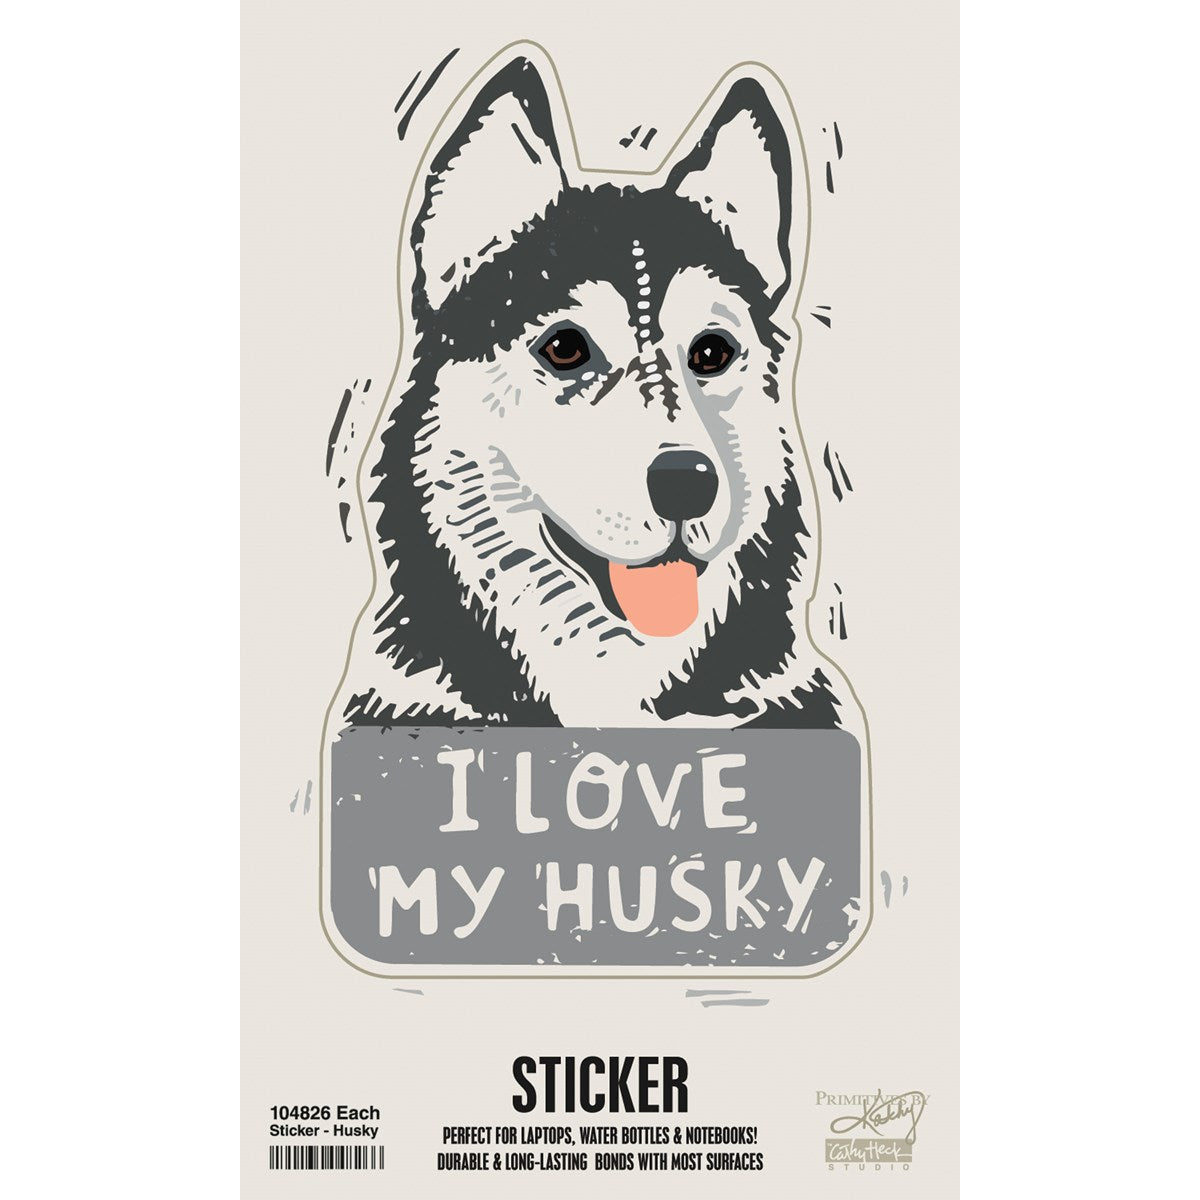 Husky sticker